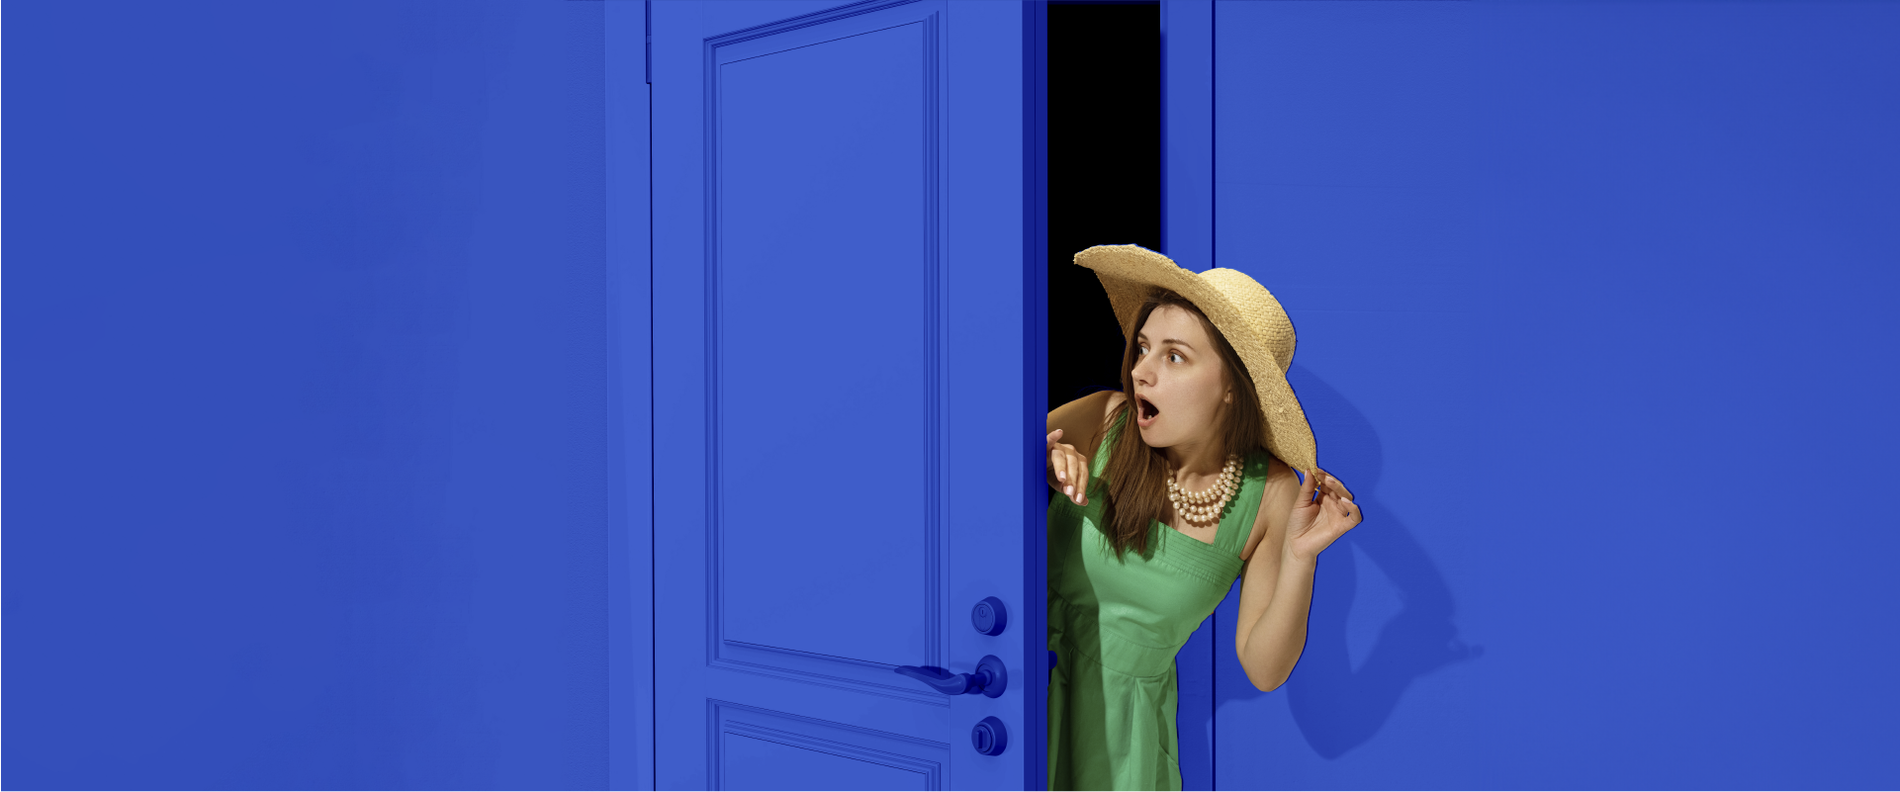 женщина в зеленом платье и соломенной шляпе выходит из синей двери